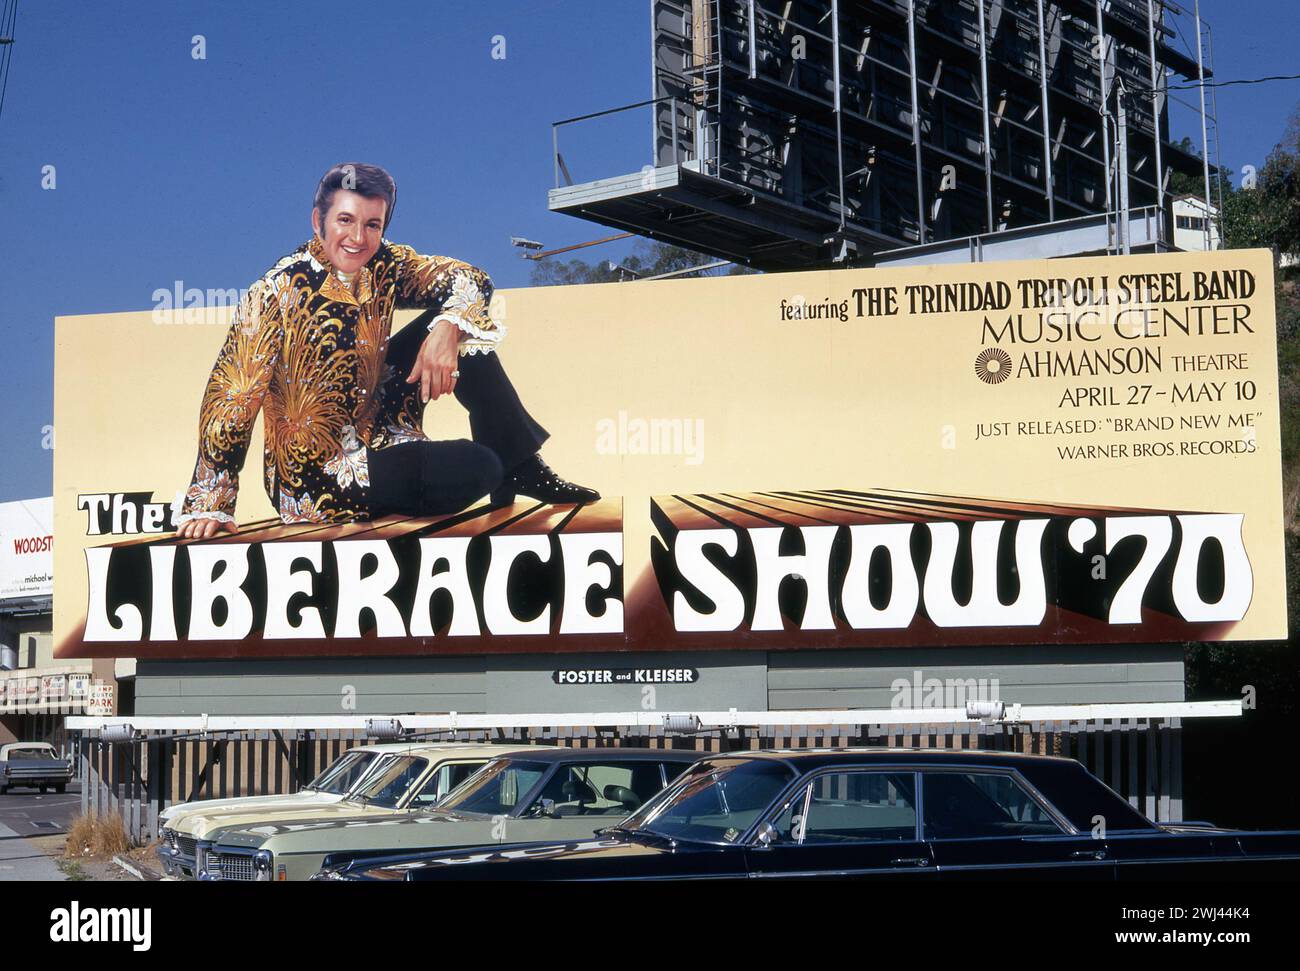 Liberace, interprète, panneau d'affichage, publicité, Sunset Strip, West Hollywood, Los Angeles, Californie, États-Unis, 1970 Banque D'Images